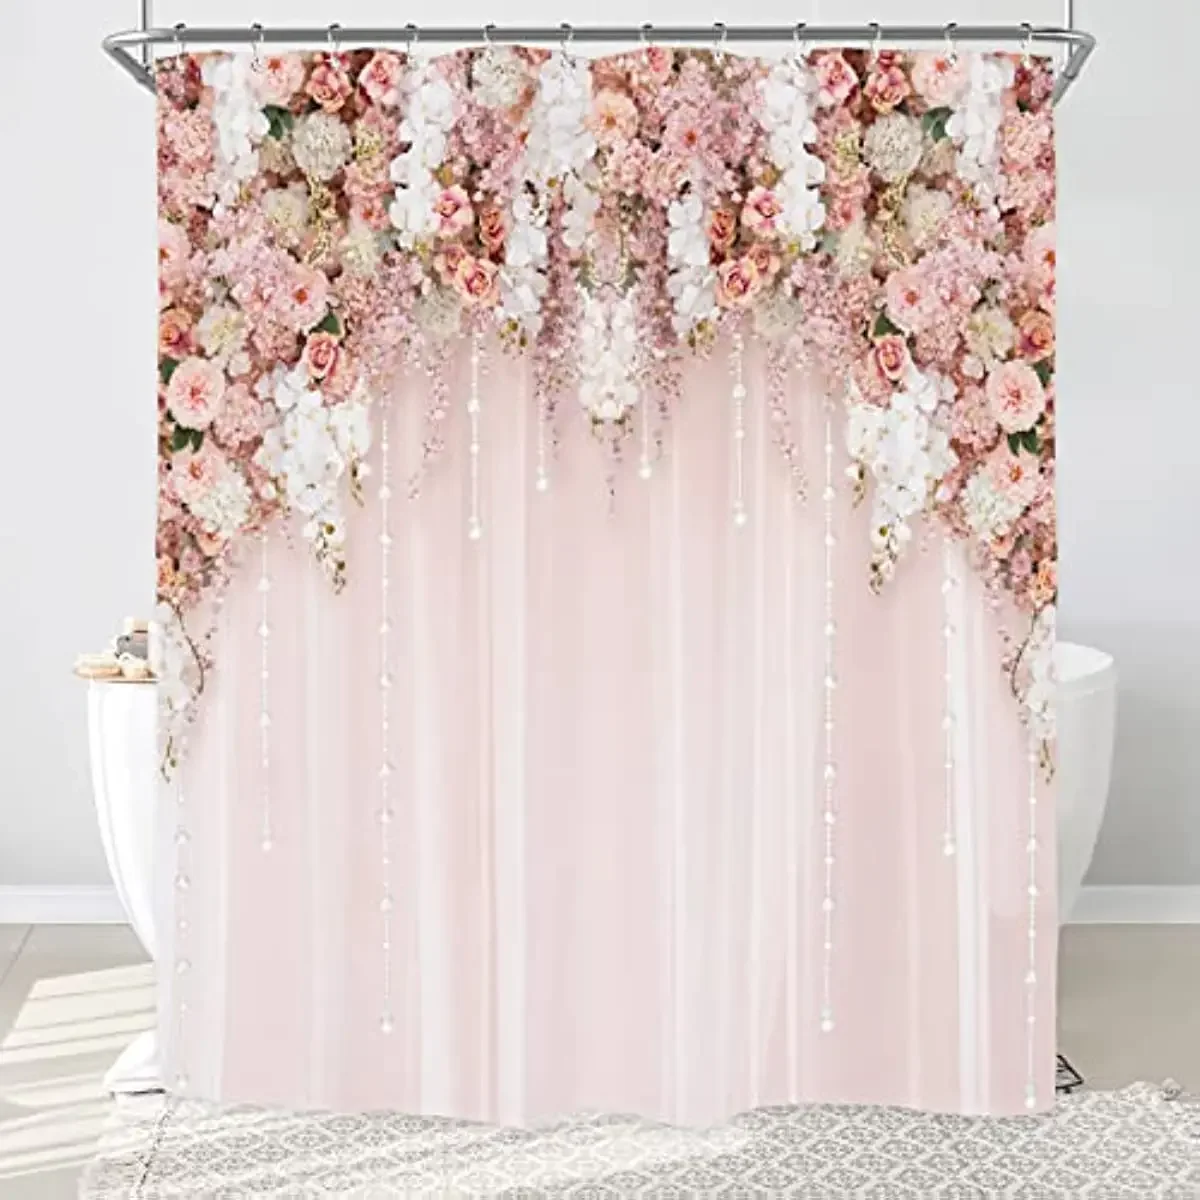 

Цветочная занавеска для душа для невесты, декор для ванной комнаты, свадебный цветок, розовые розы, для женщин и девушек, весенний декор для ванной комнаты с натуральными цветами